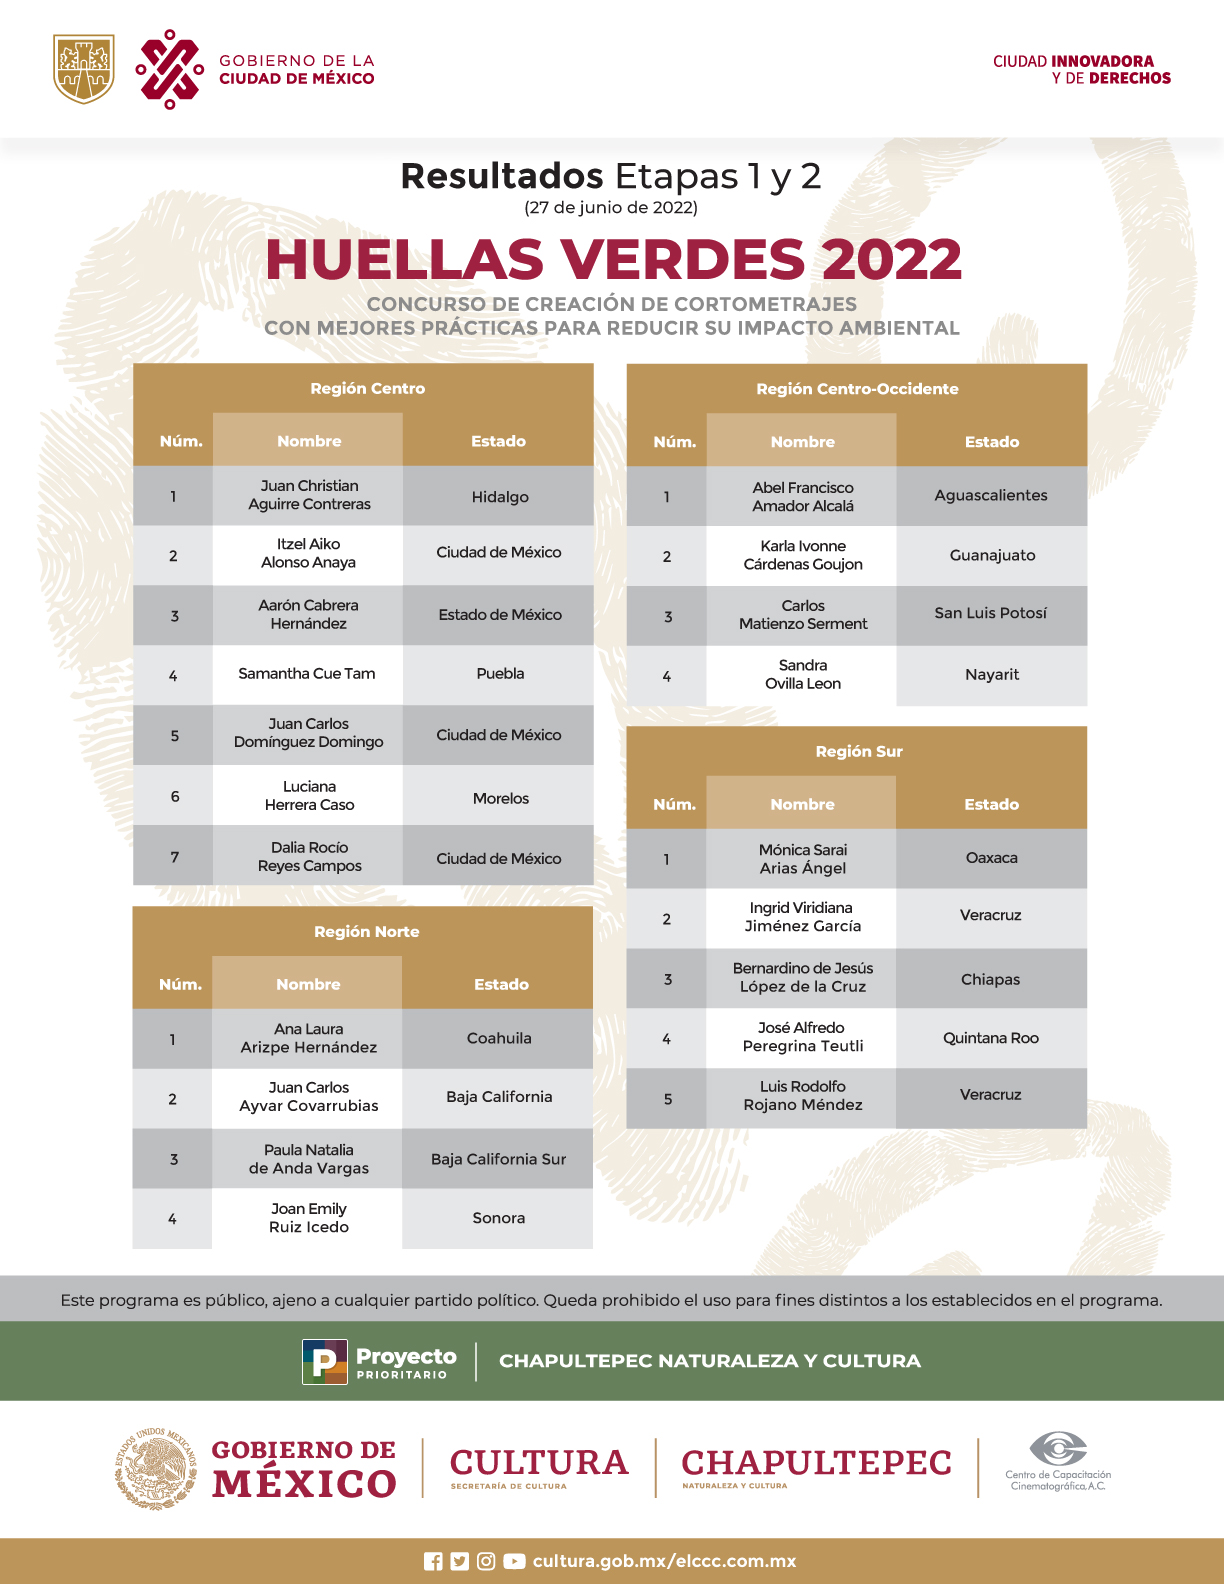 2022 HUELLAS VERDES RESULTADOS 2022 ETAPAS1Y2